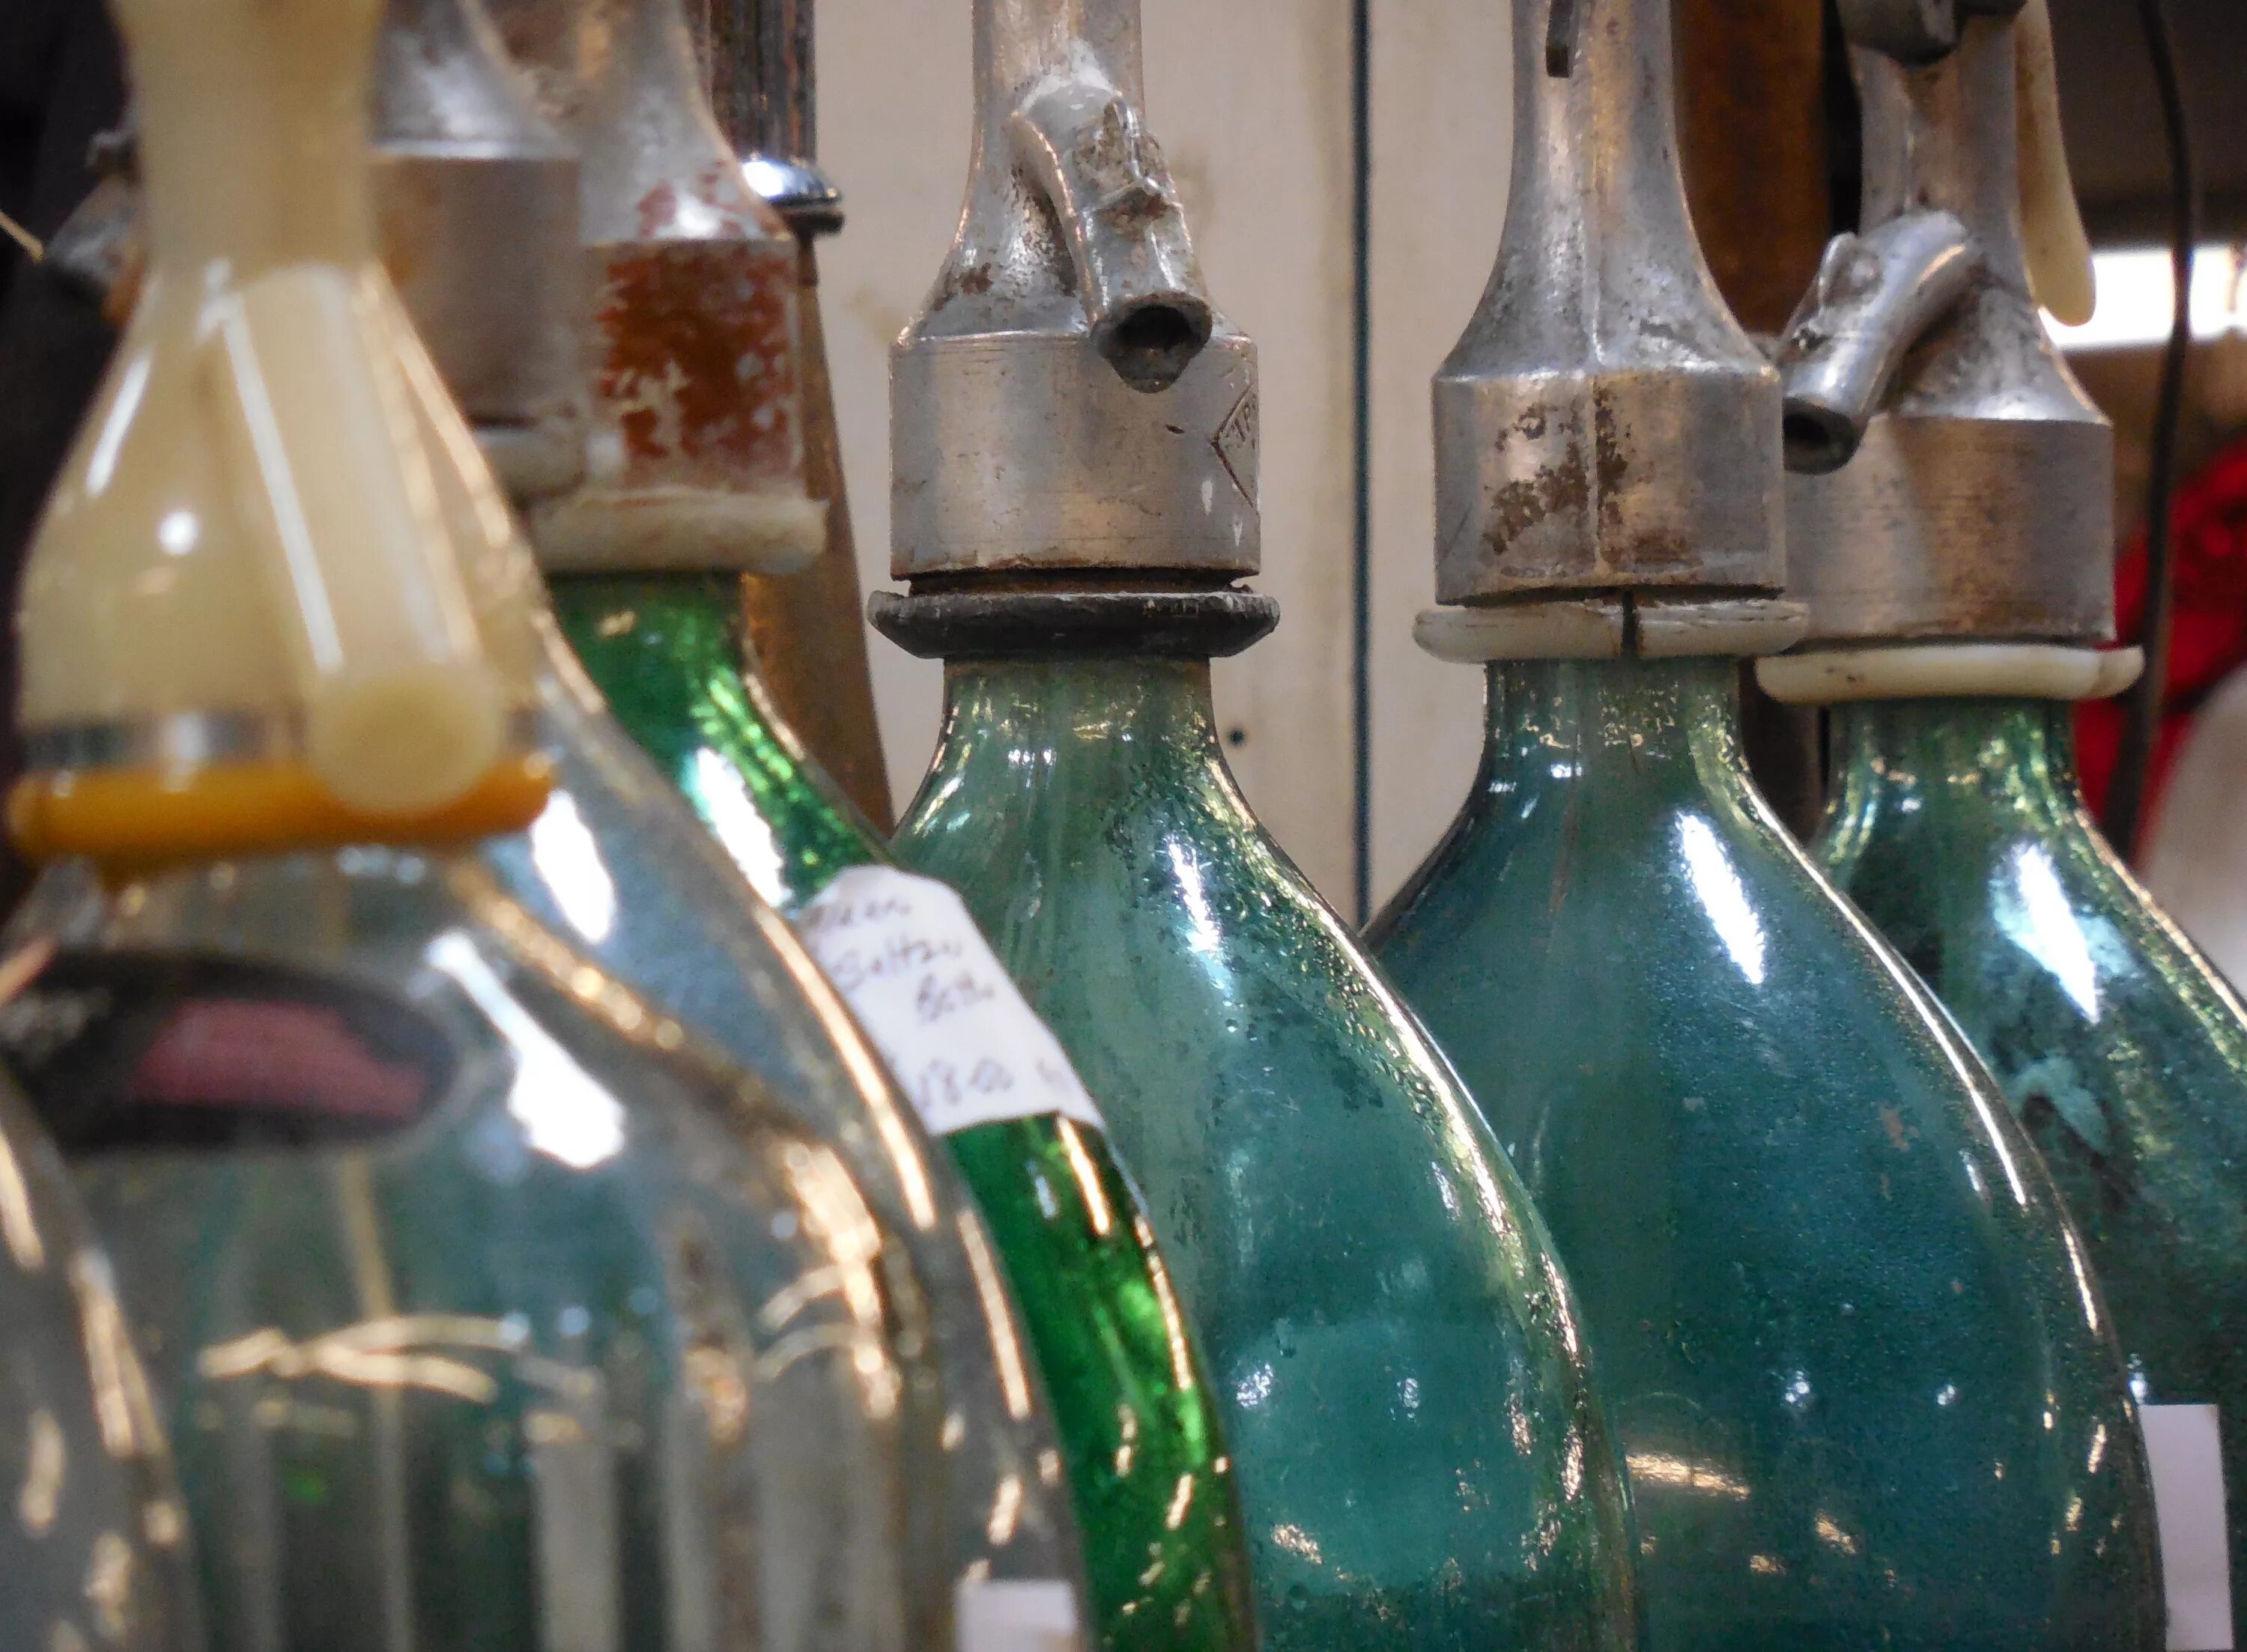 Мытье флаконов. Старинные бутылки из стекла. Алкогольные напитки в стеклянных бутылках. Трехлитровая бутылка. Коллекция пустых бутылок.